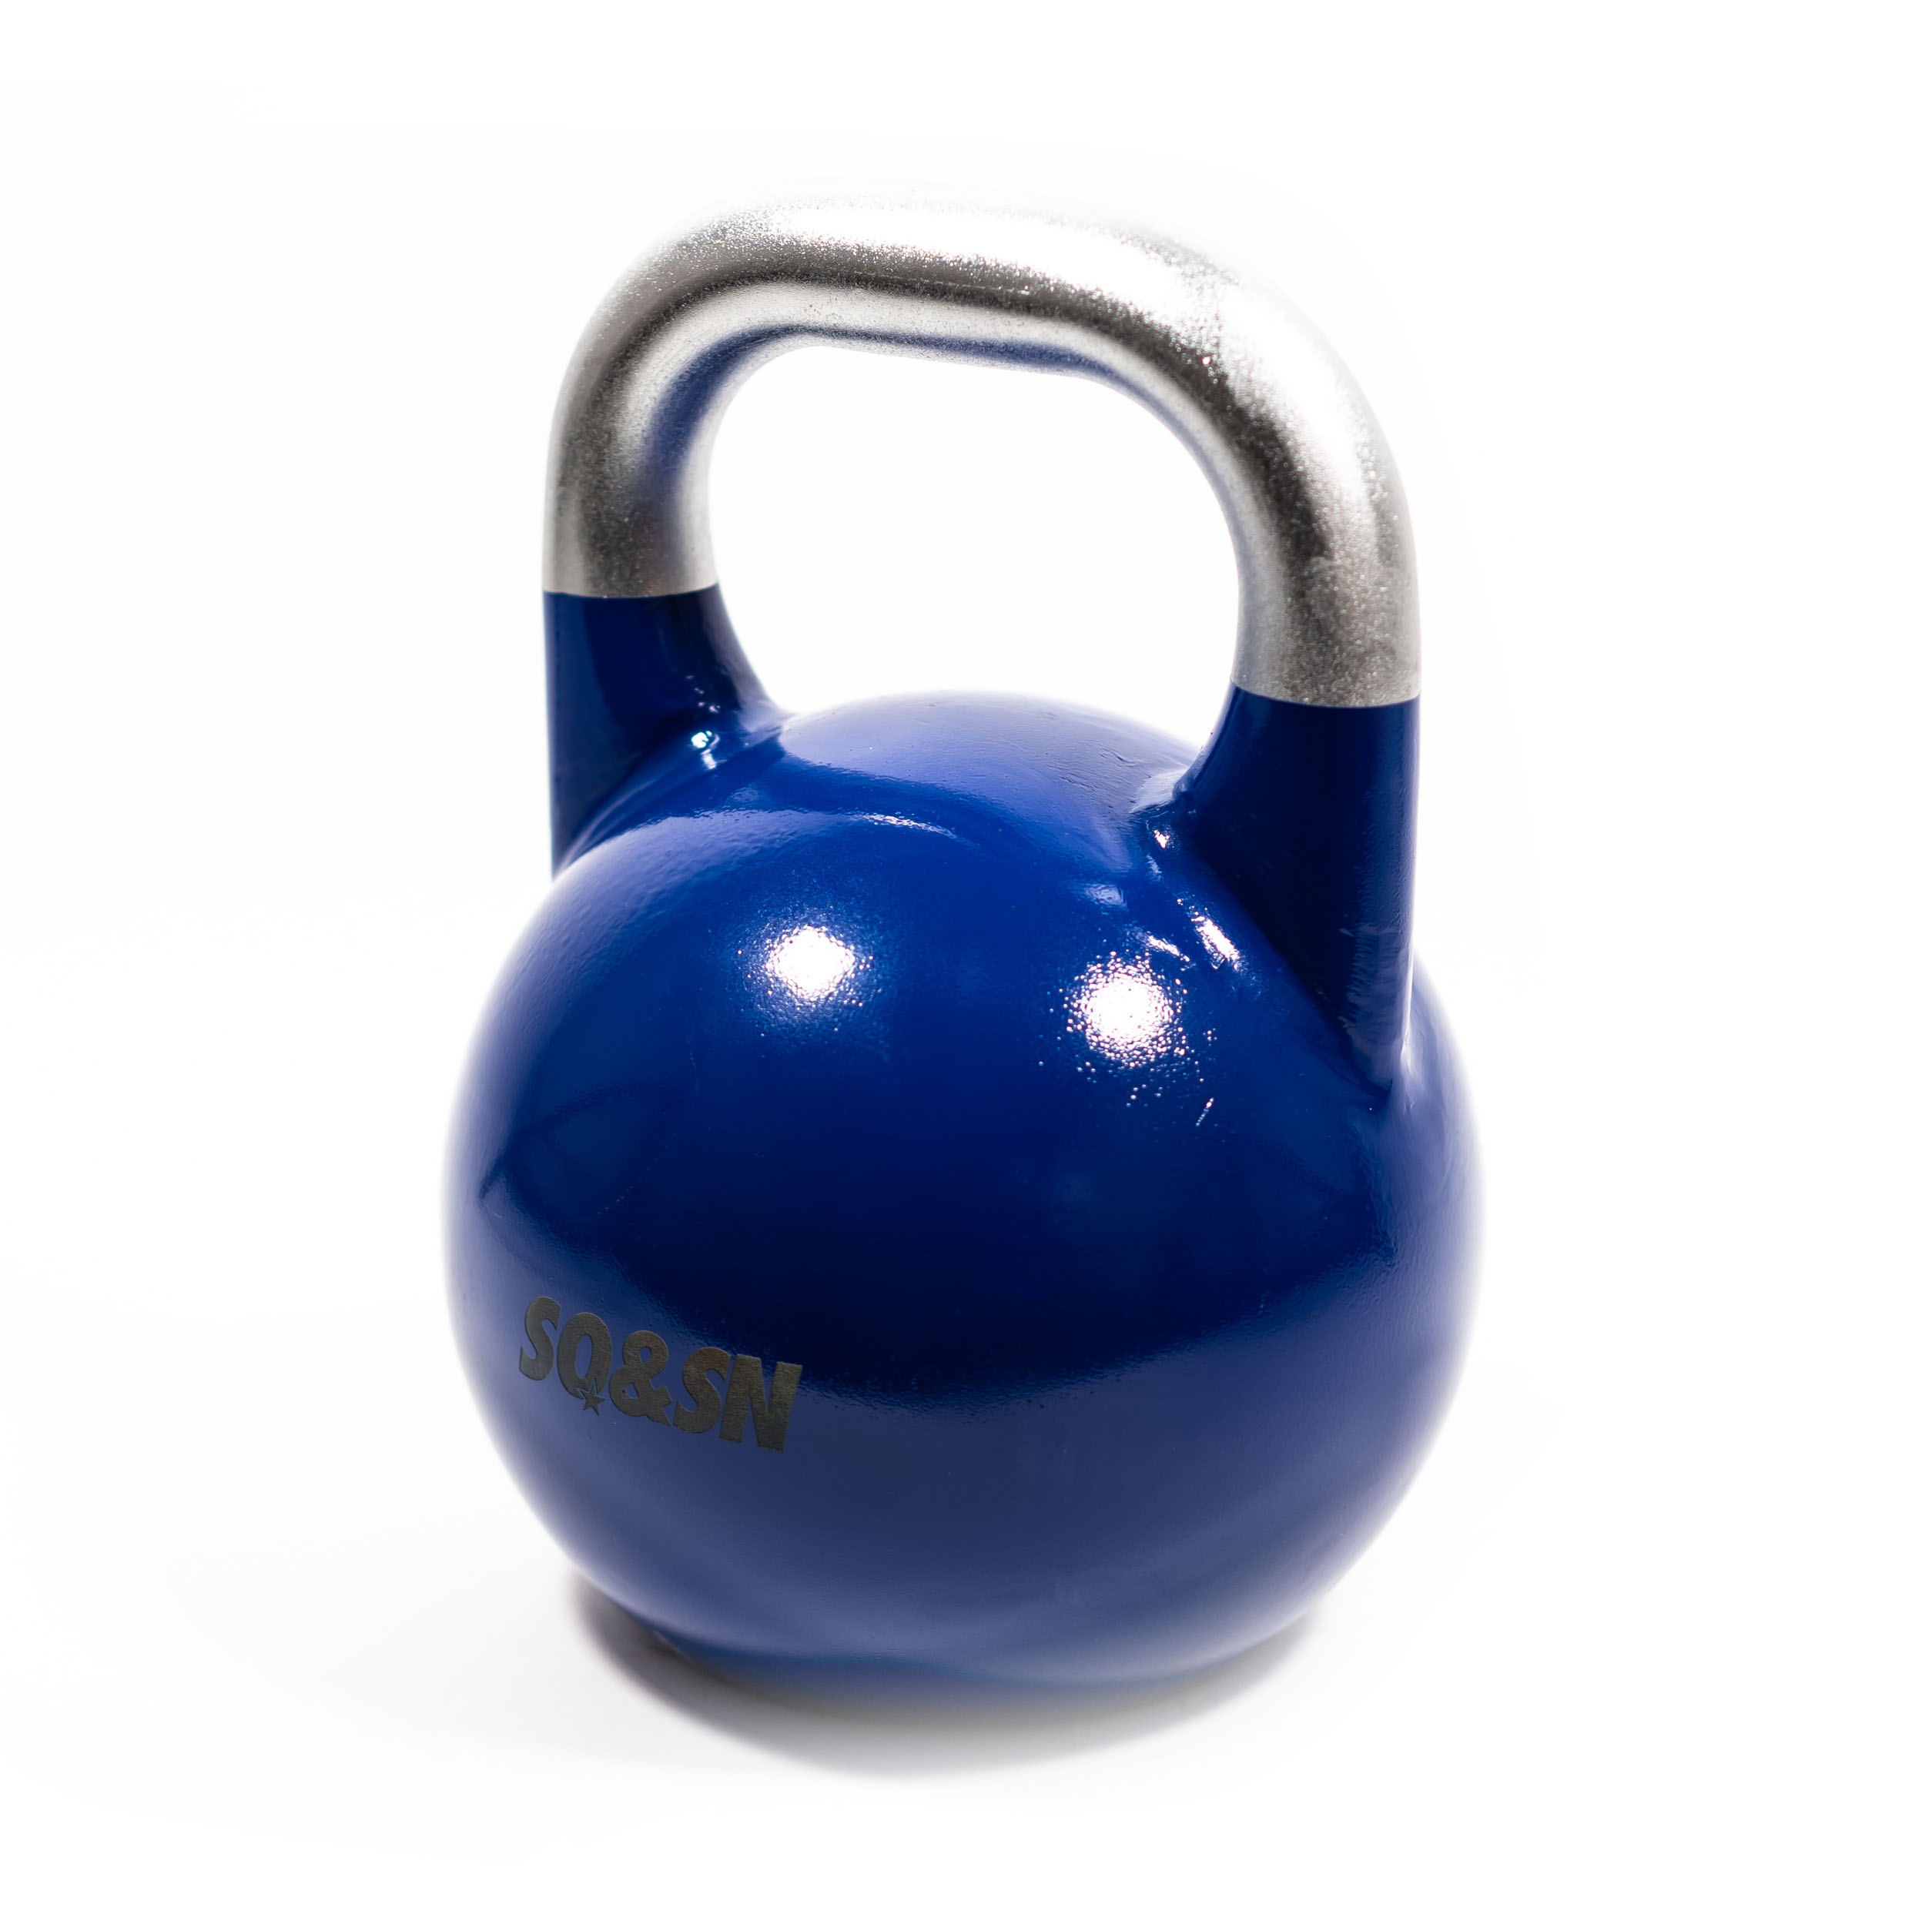 SQ&SN Competition Kettlebell (12 kg) i støbejern. Udstyr til crossfit træning, styrketræning og funktionel træning thumbnail